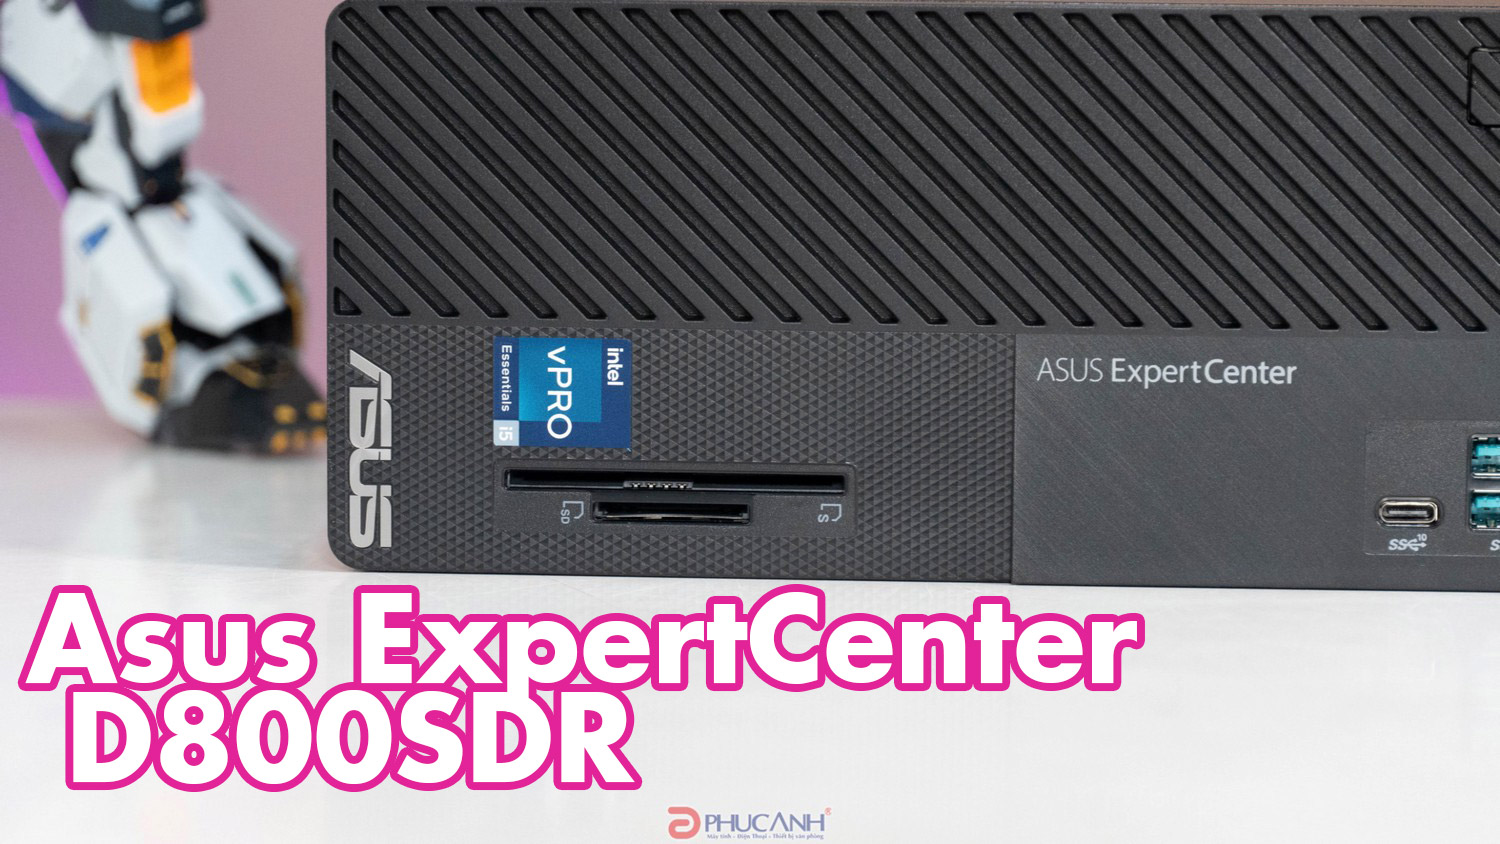 Đánh giá máy tính Asus ExpertCenter D800SDR - Gọn nhẹ, hiệu suất cao, bảo mật doanh nghiệp